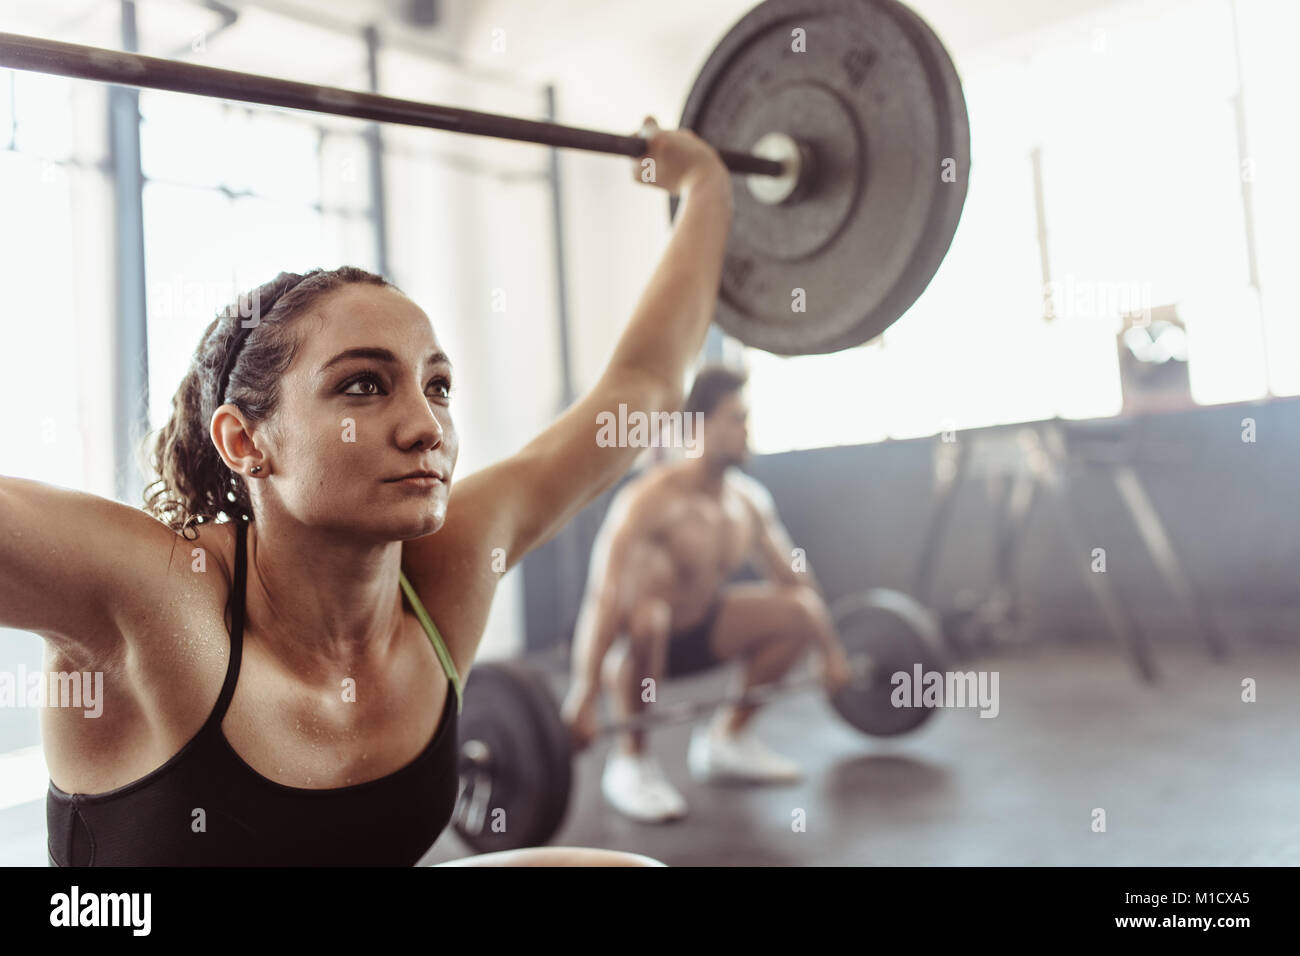 Tough young woman exercising with barbell. Athlète féminine déterminée des poids lourds de levage à l'entraînement en salle de sport. Banque D'Images